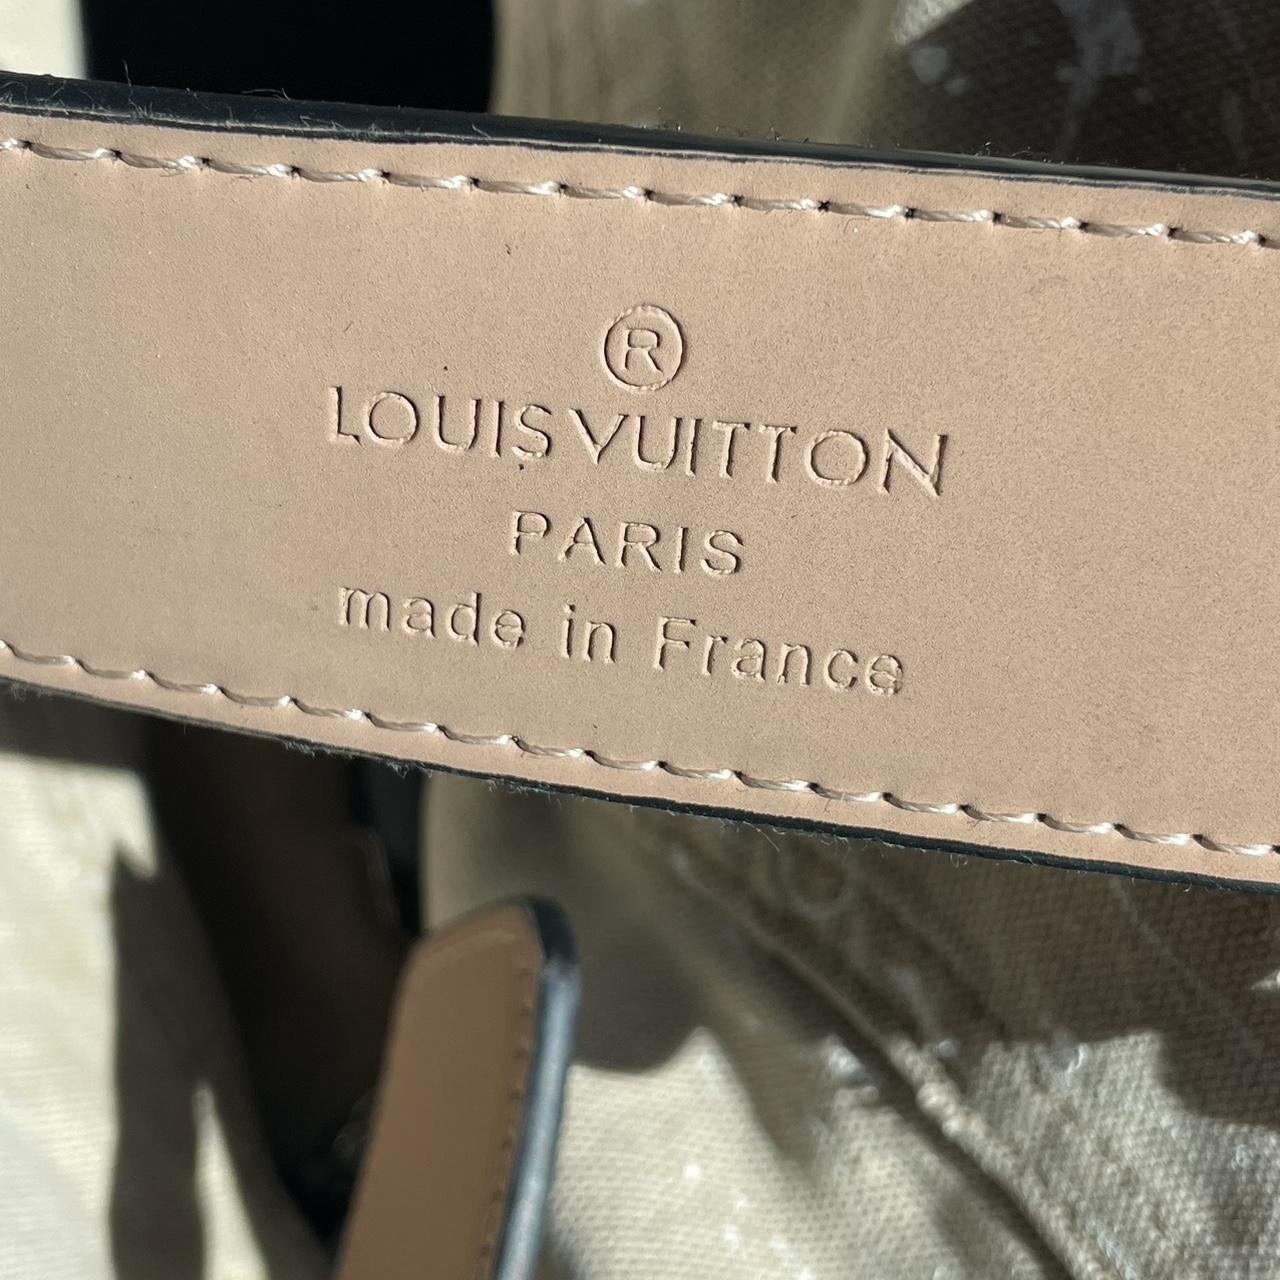 Louis vuitton belt size 100/40 in damier ebene - Depop